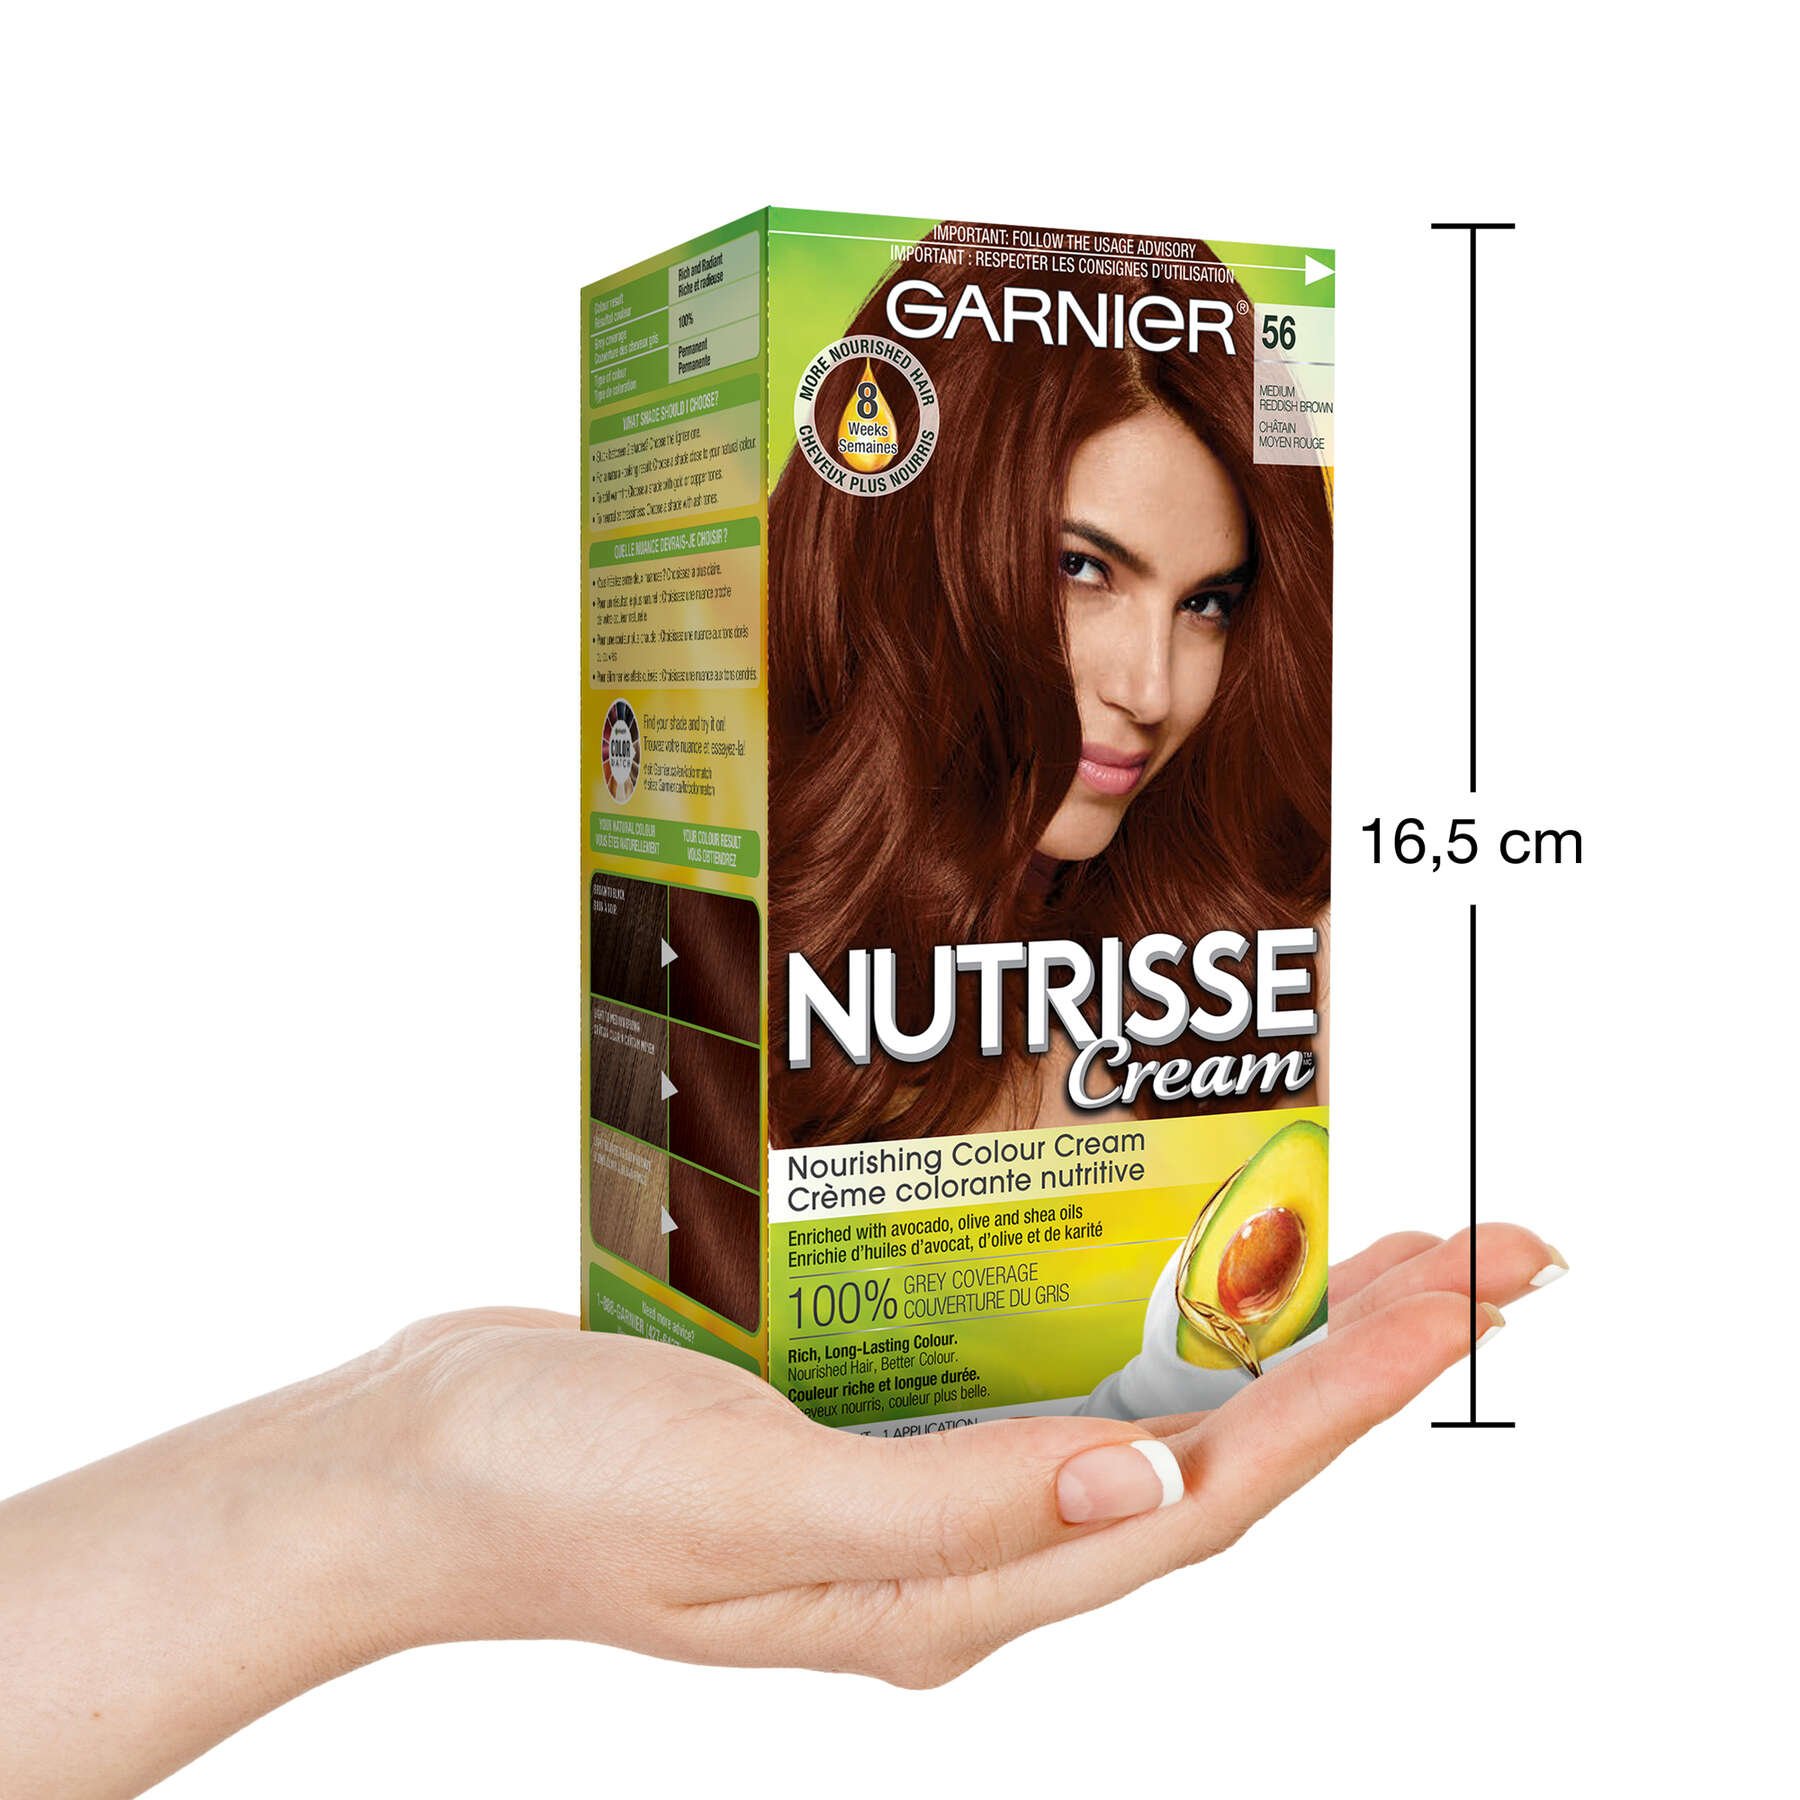 garnier hair dye nutrisse cream 56 medium reddish brown 0770103447131 inhand